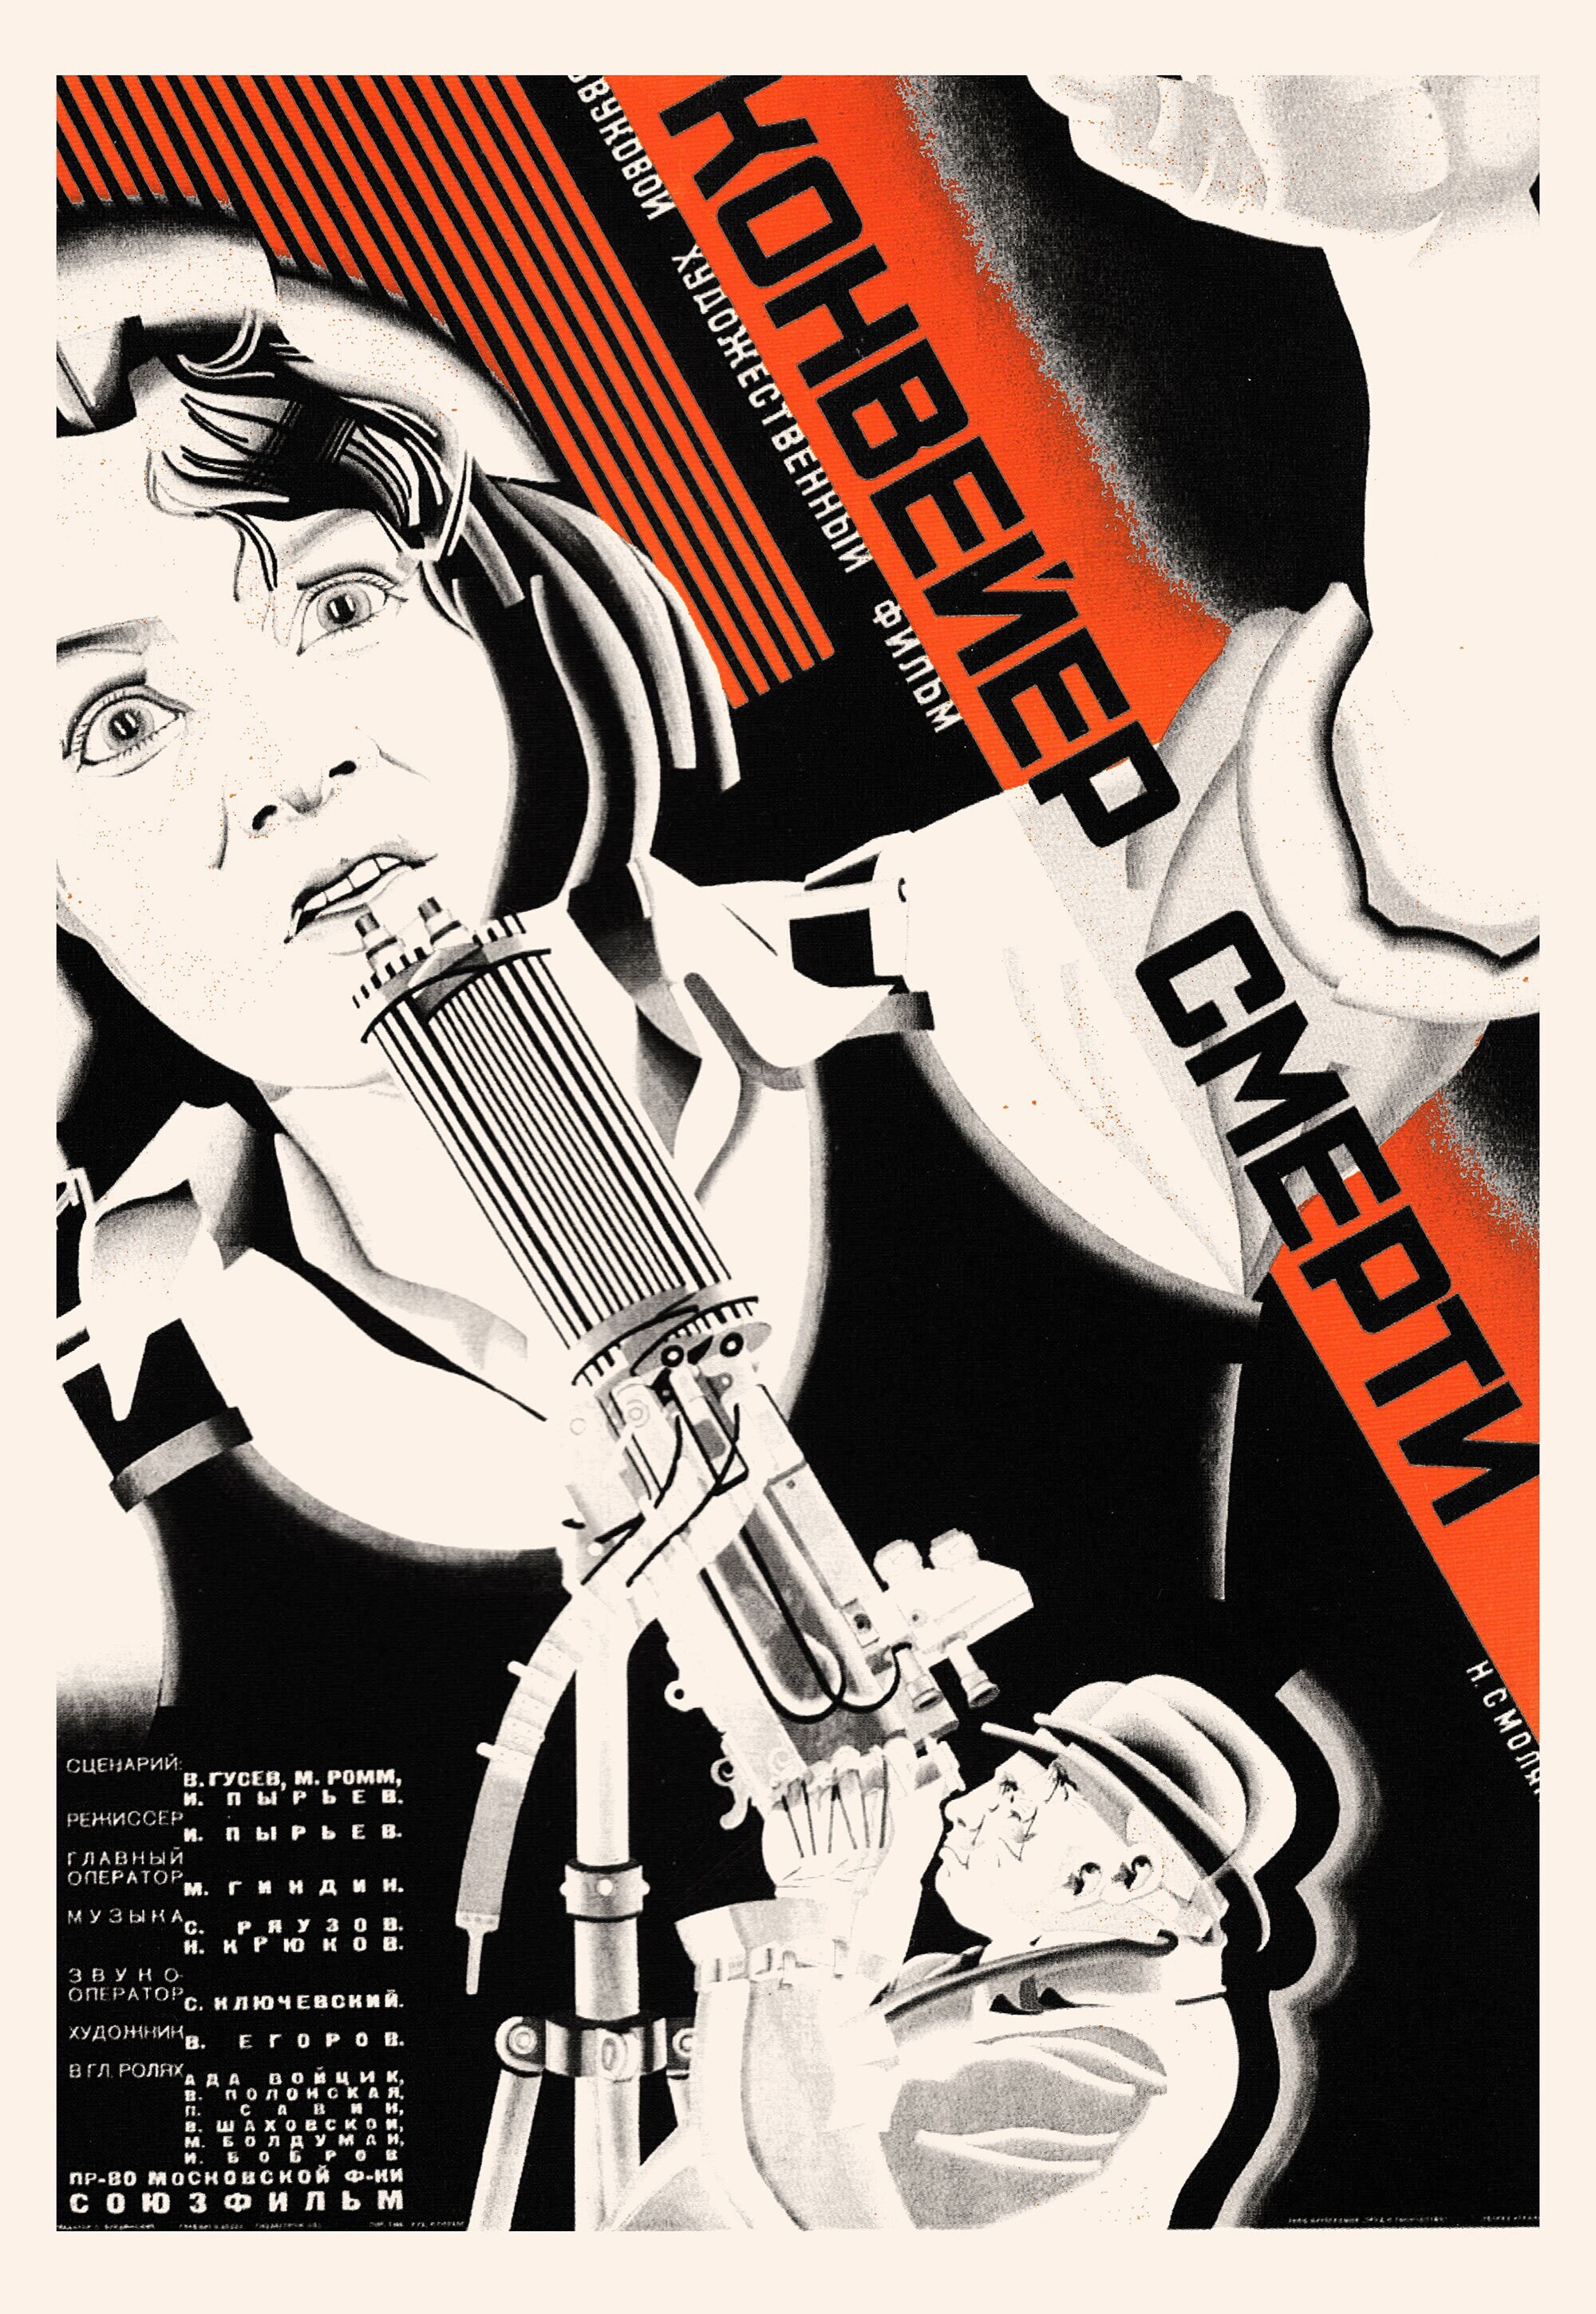 Конвейер смерти, 1933 год, режиссёр И. Пырьев, плакат к фильму, автор Николай Смоляк (авангардное советское искусство, 1920-е)